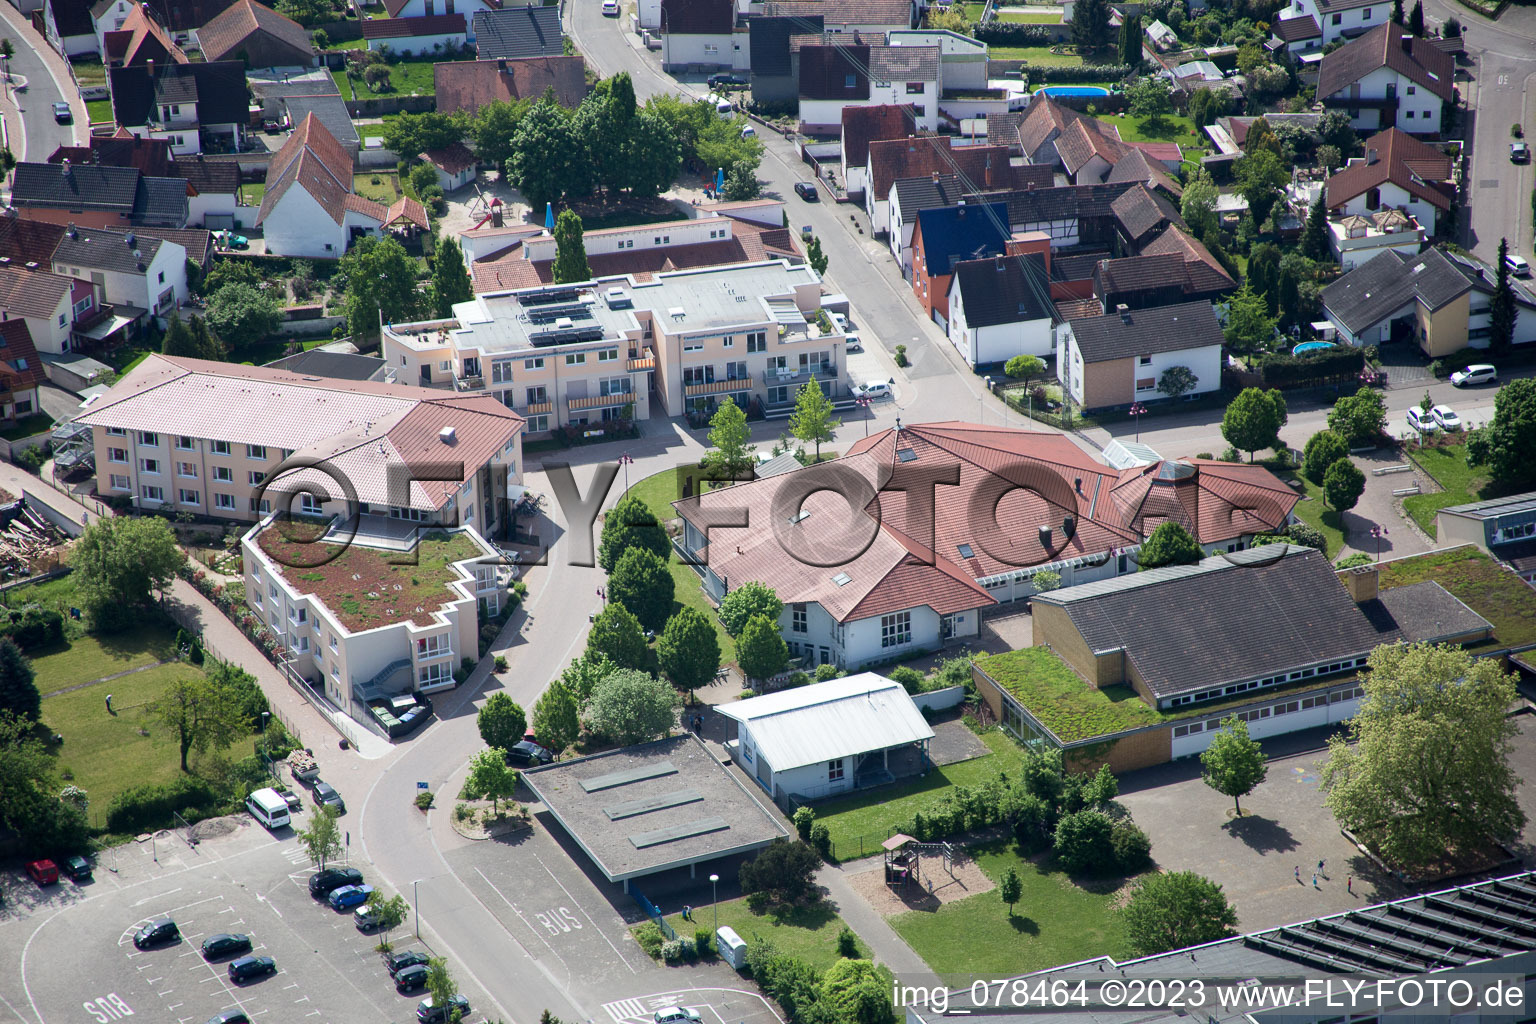 Hagenbach im Bundesland Rheinland-Pfalz, Deutschland von einer Drohne aus